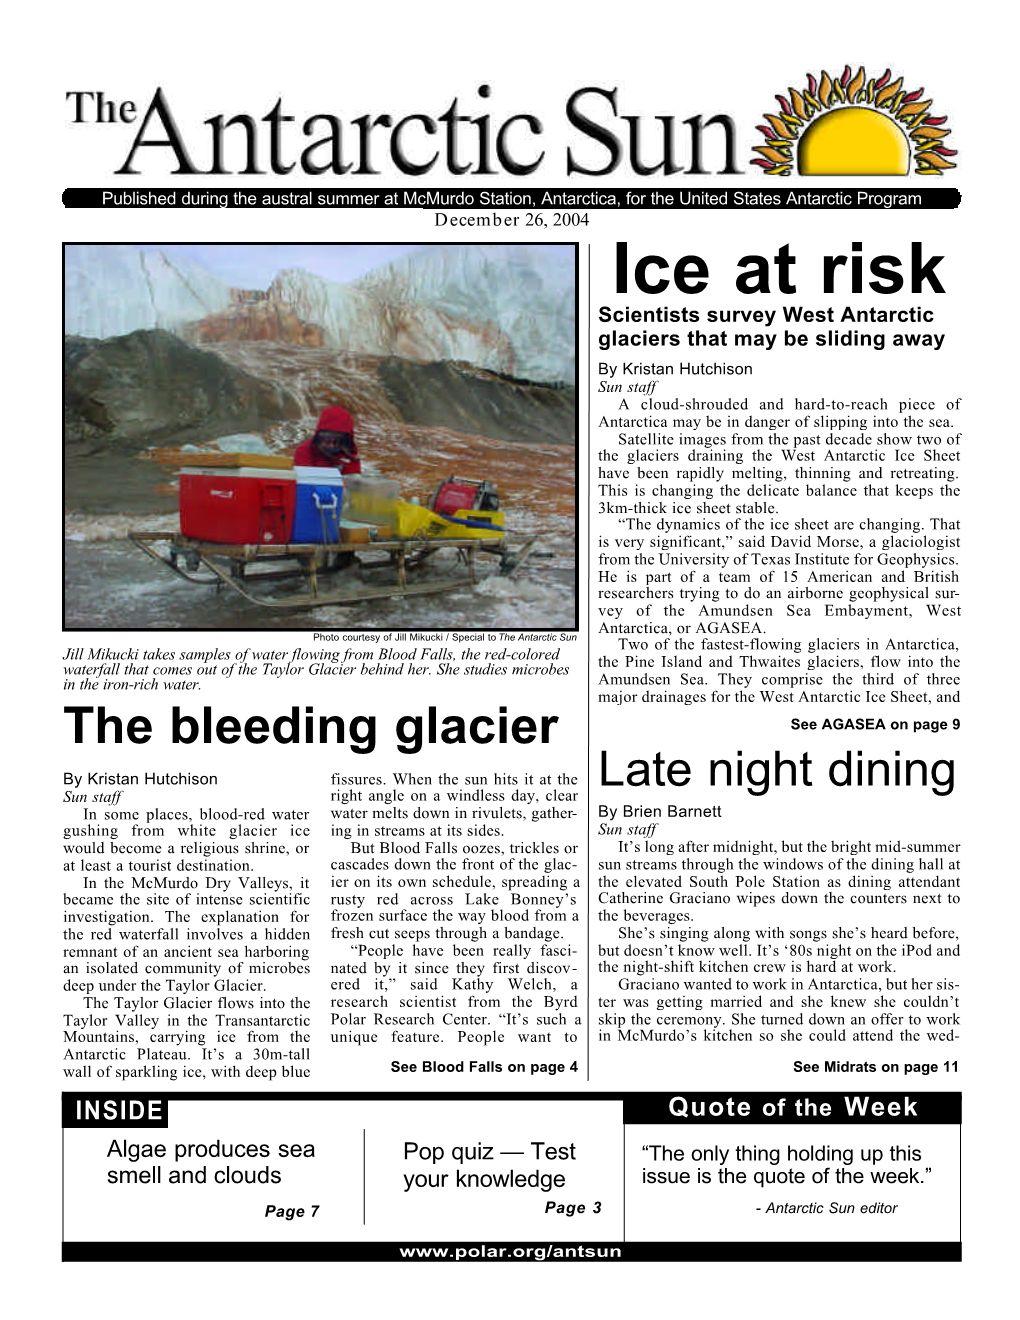 The Antarctic Sun, December 26, 2004